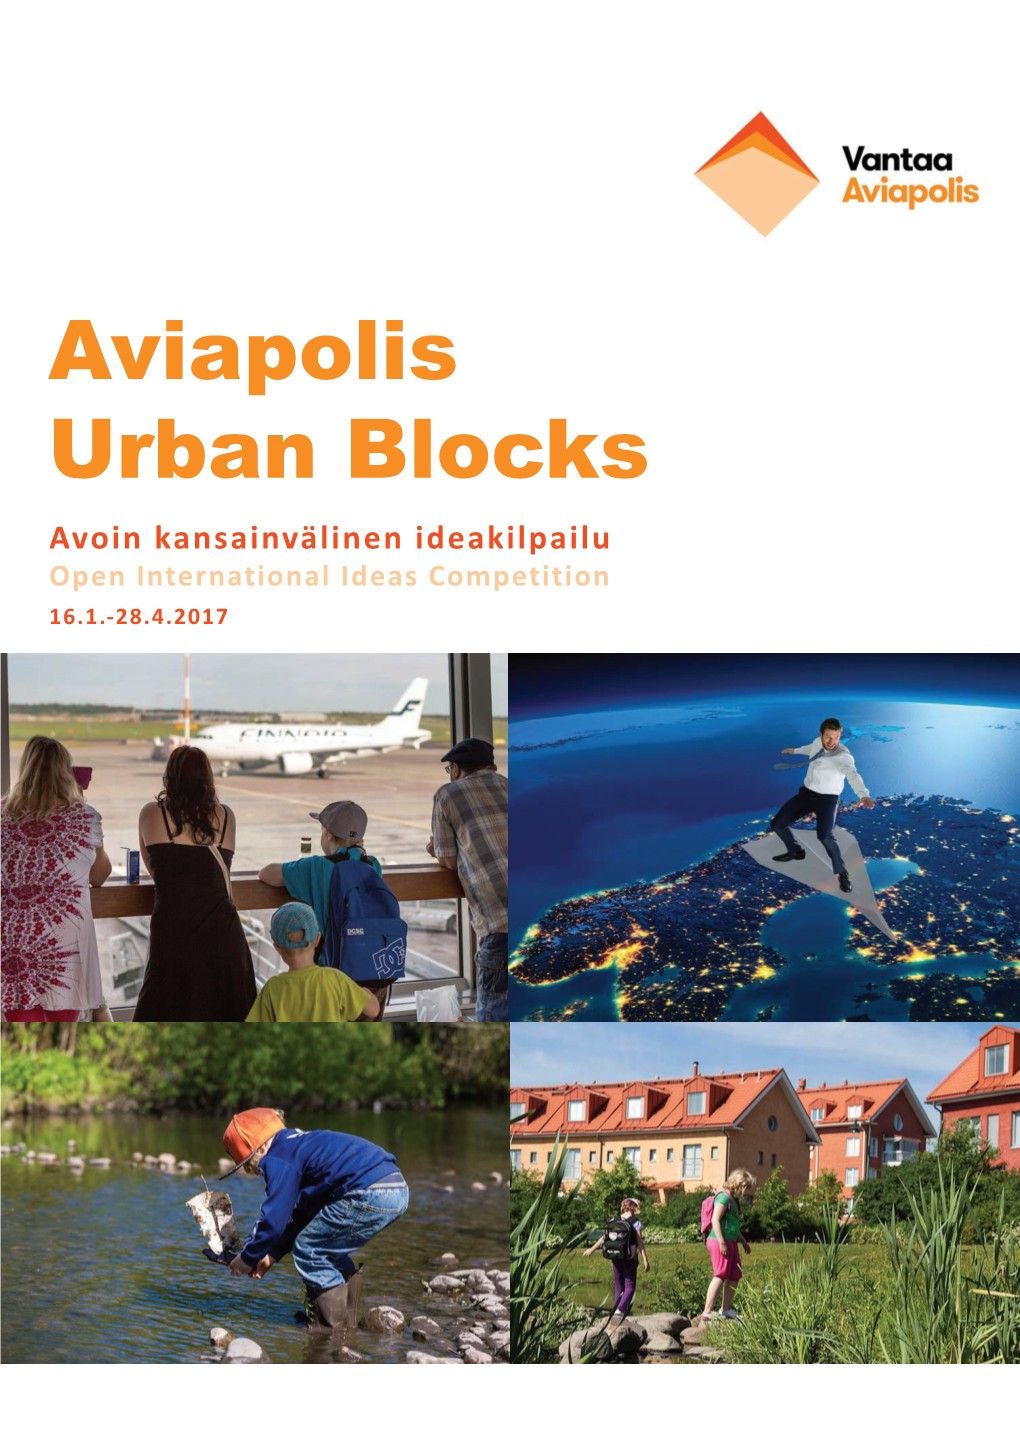 Aviapolis Urban Blocks Avoin Kansainvälinen Ideakilpailu Open International Ideas Competition 16.1.-28.4.2017 Aviapolis Urban Blocks Kilpailuohjelma